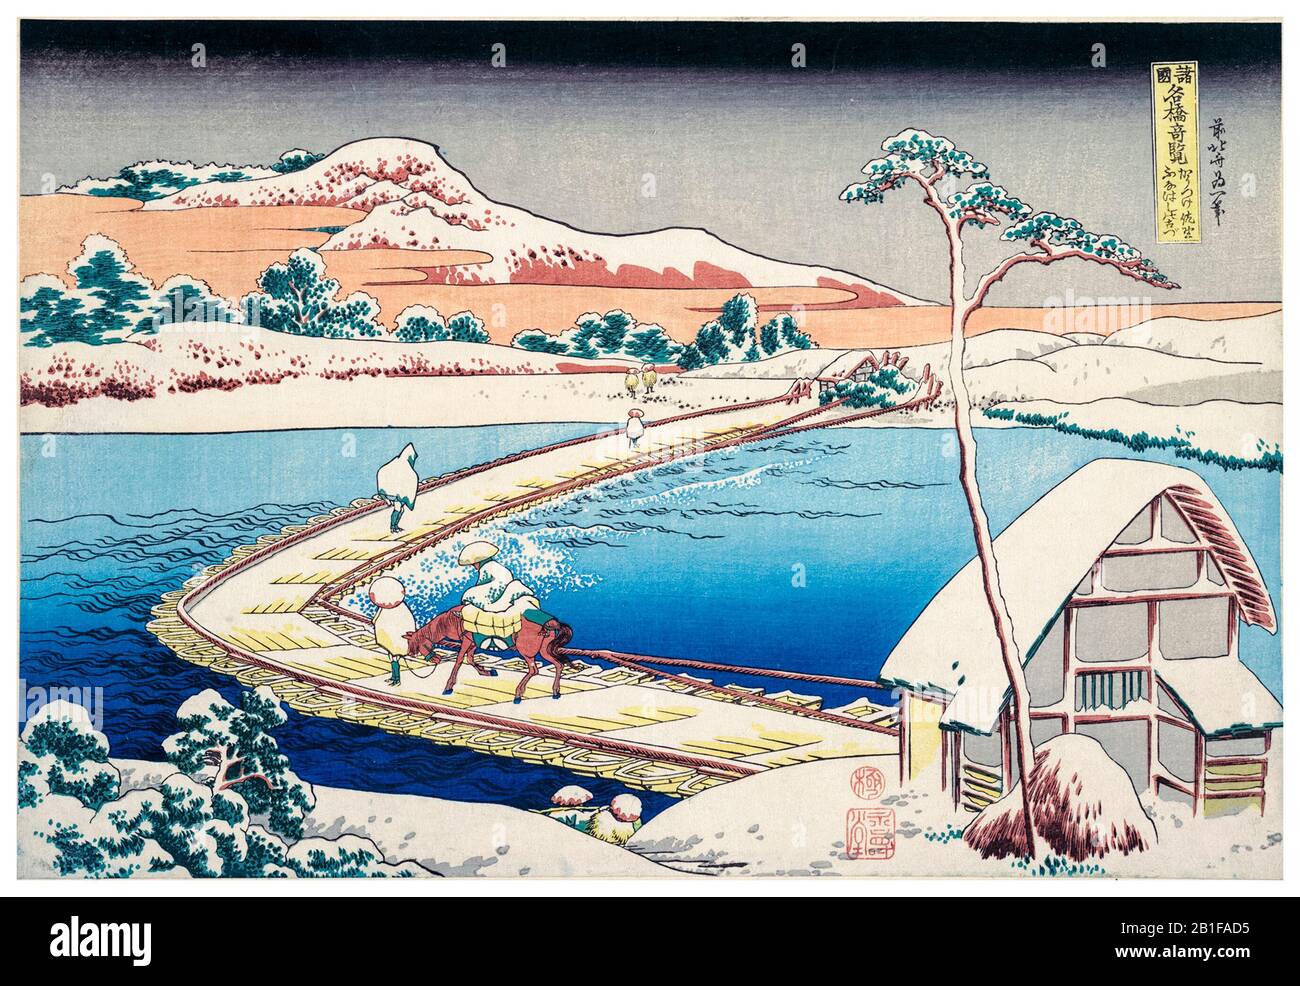 Katsushika Hokusai, vue sur la vieille ville de Sano dans la province de Kōzuke, impression sur bois, vers 1830 Banque D'Images